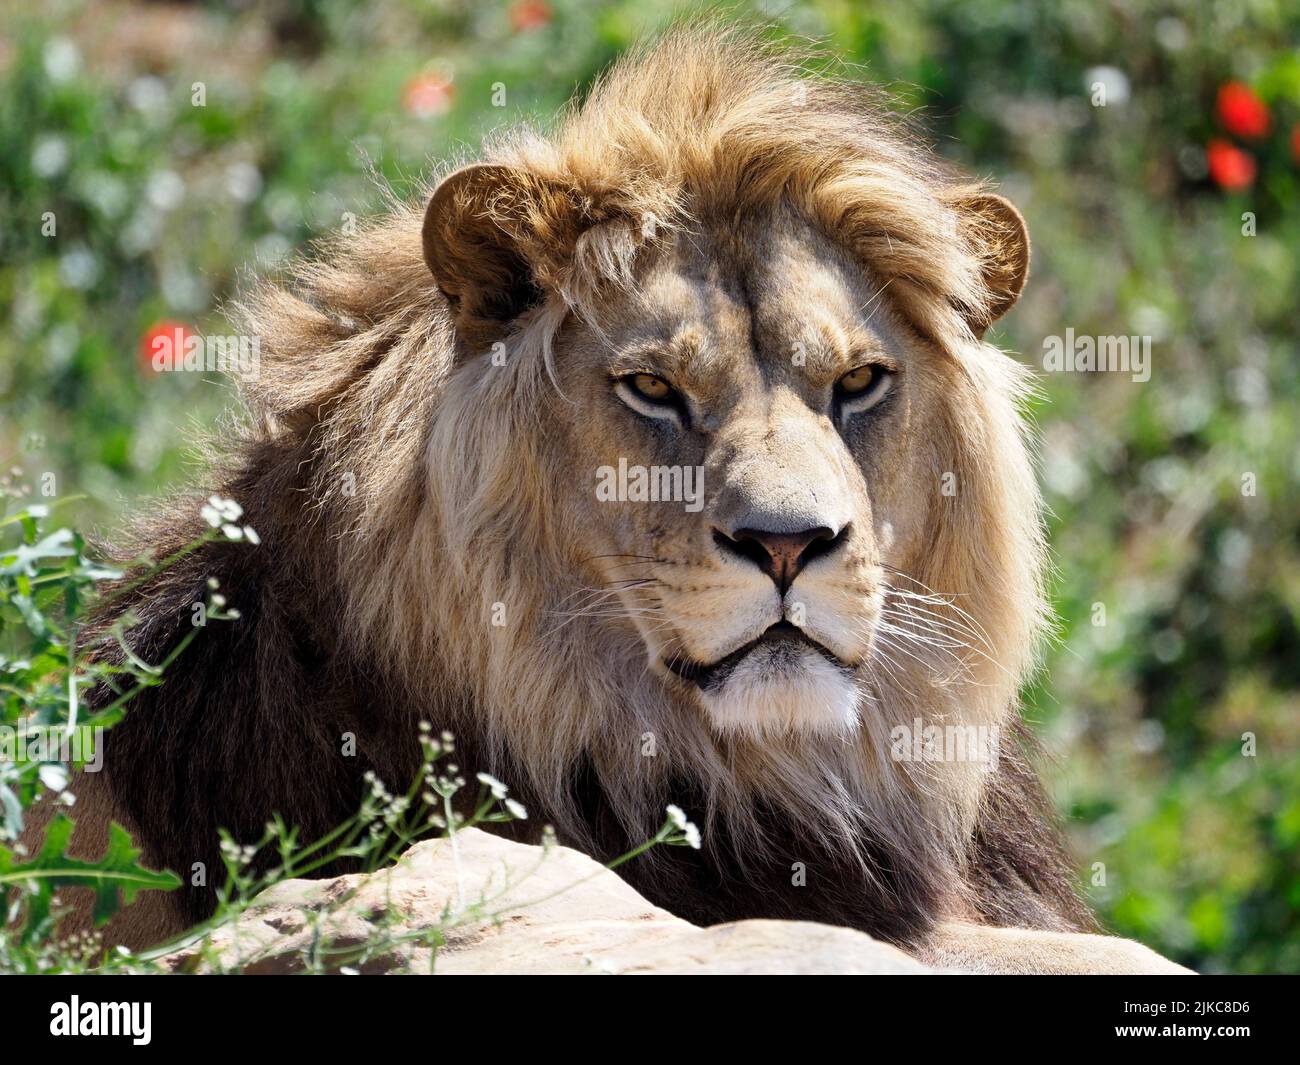 Retrato del león (Panthera leo) visto desde el frente Foto de stock